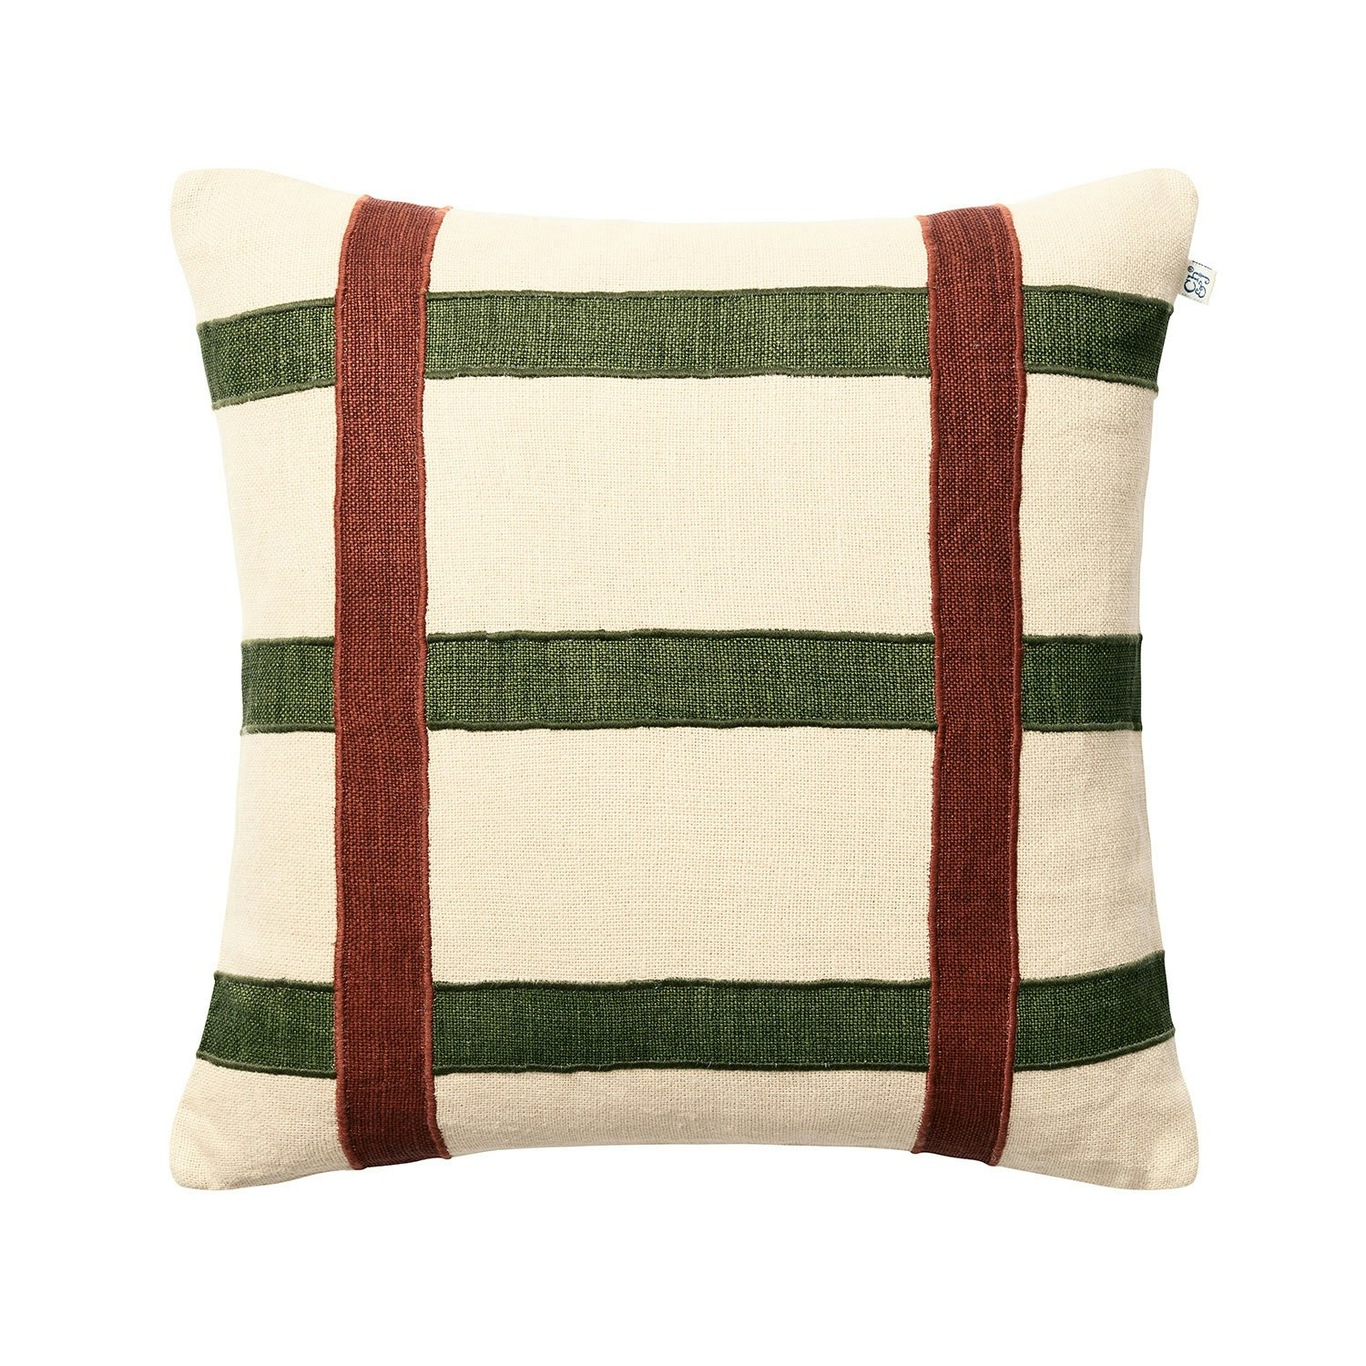 Kiran Cushion Cover 50x50 cm, Terracotta/Cactus Green